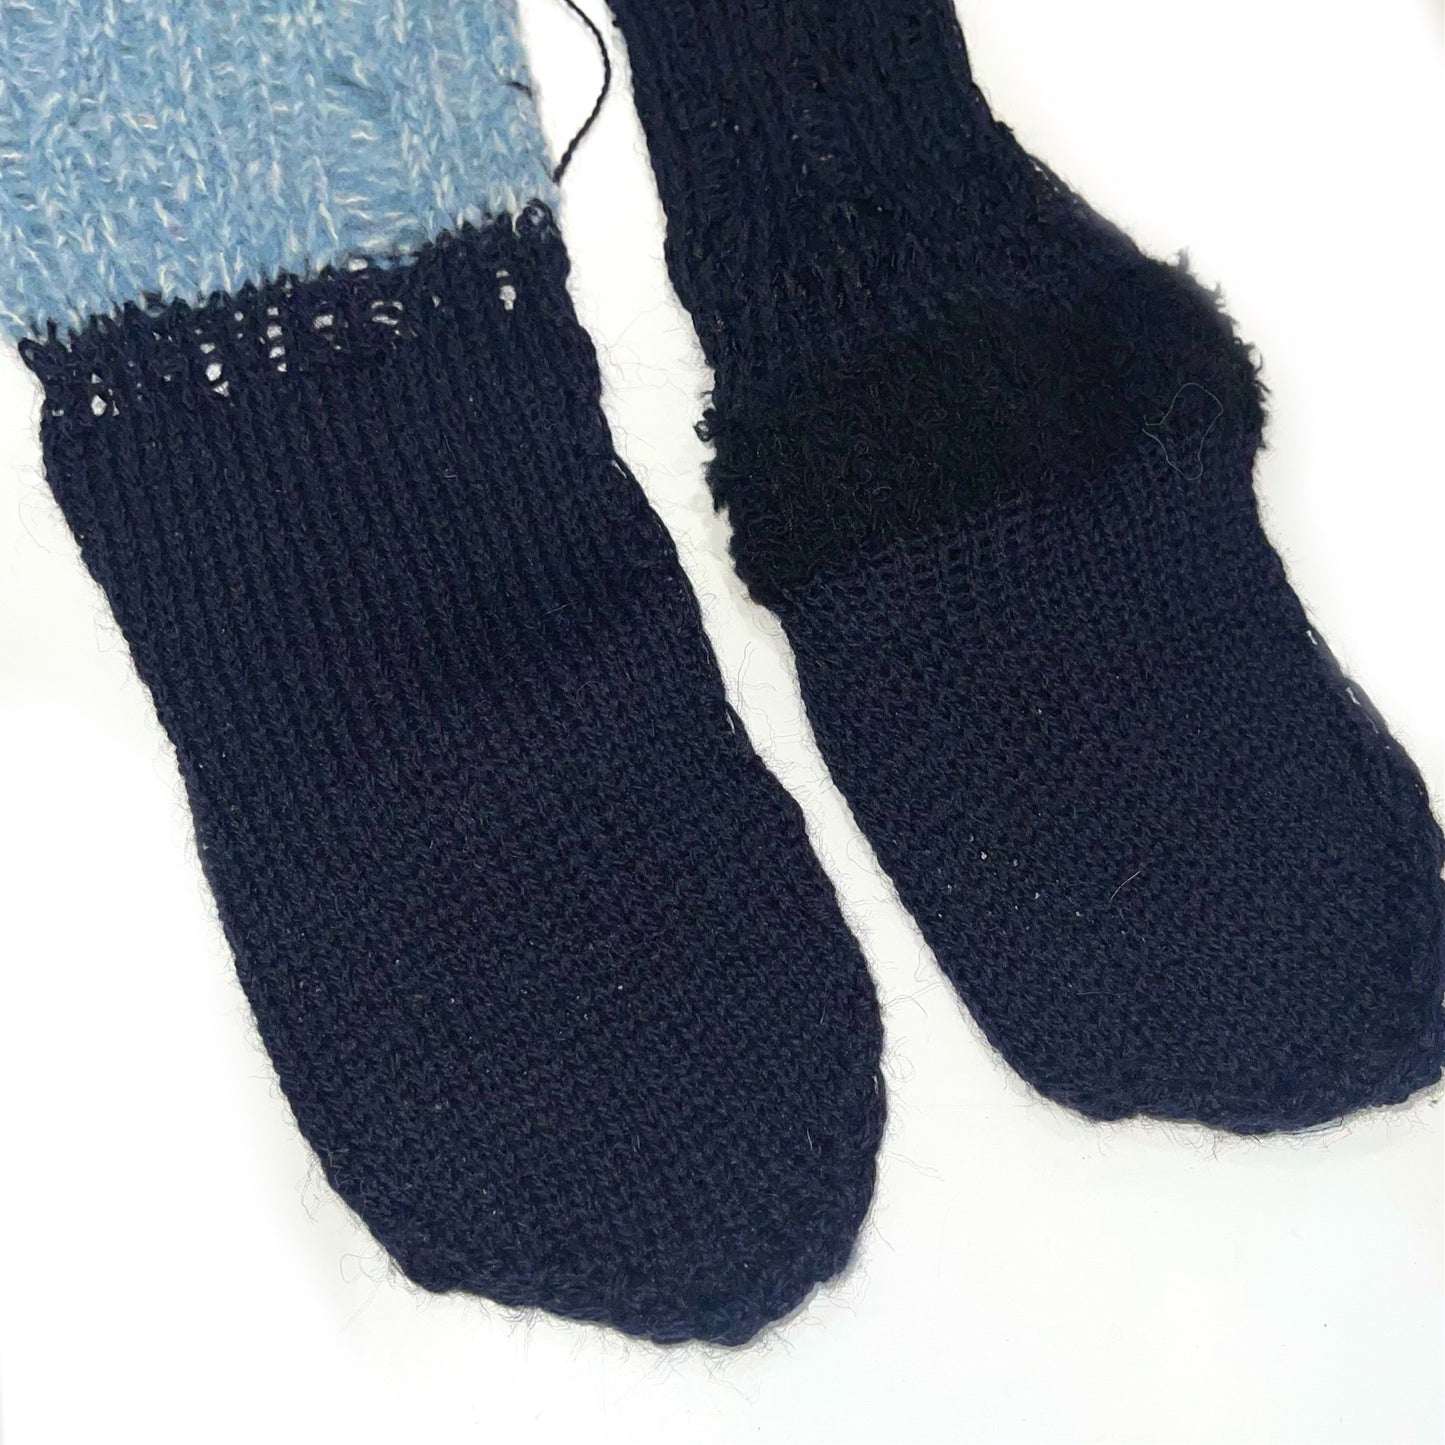 9pitch knit socks / Black / 9ピッチニットソックス